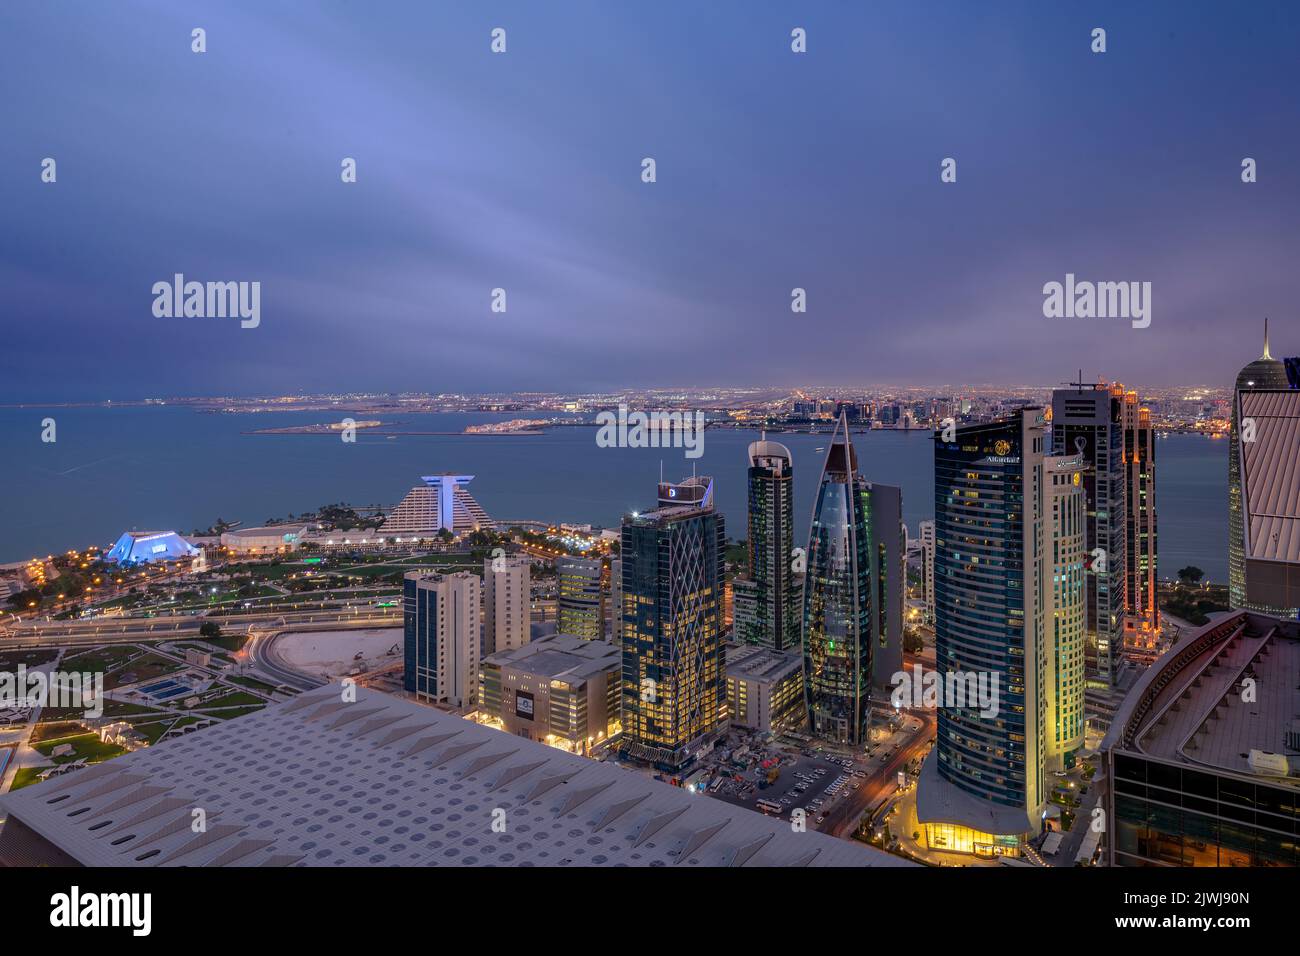 El horizonte moderno de la bahía oeste de Doha al atardecer Foto de stock